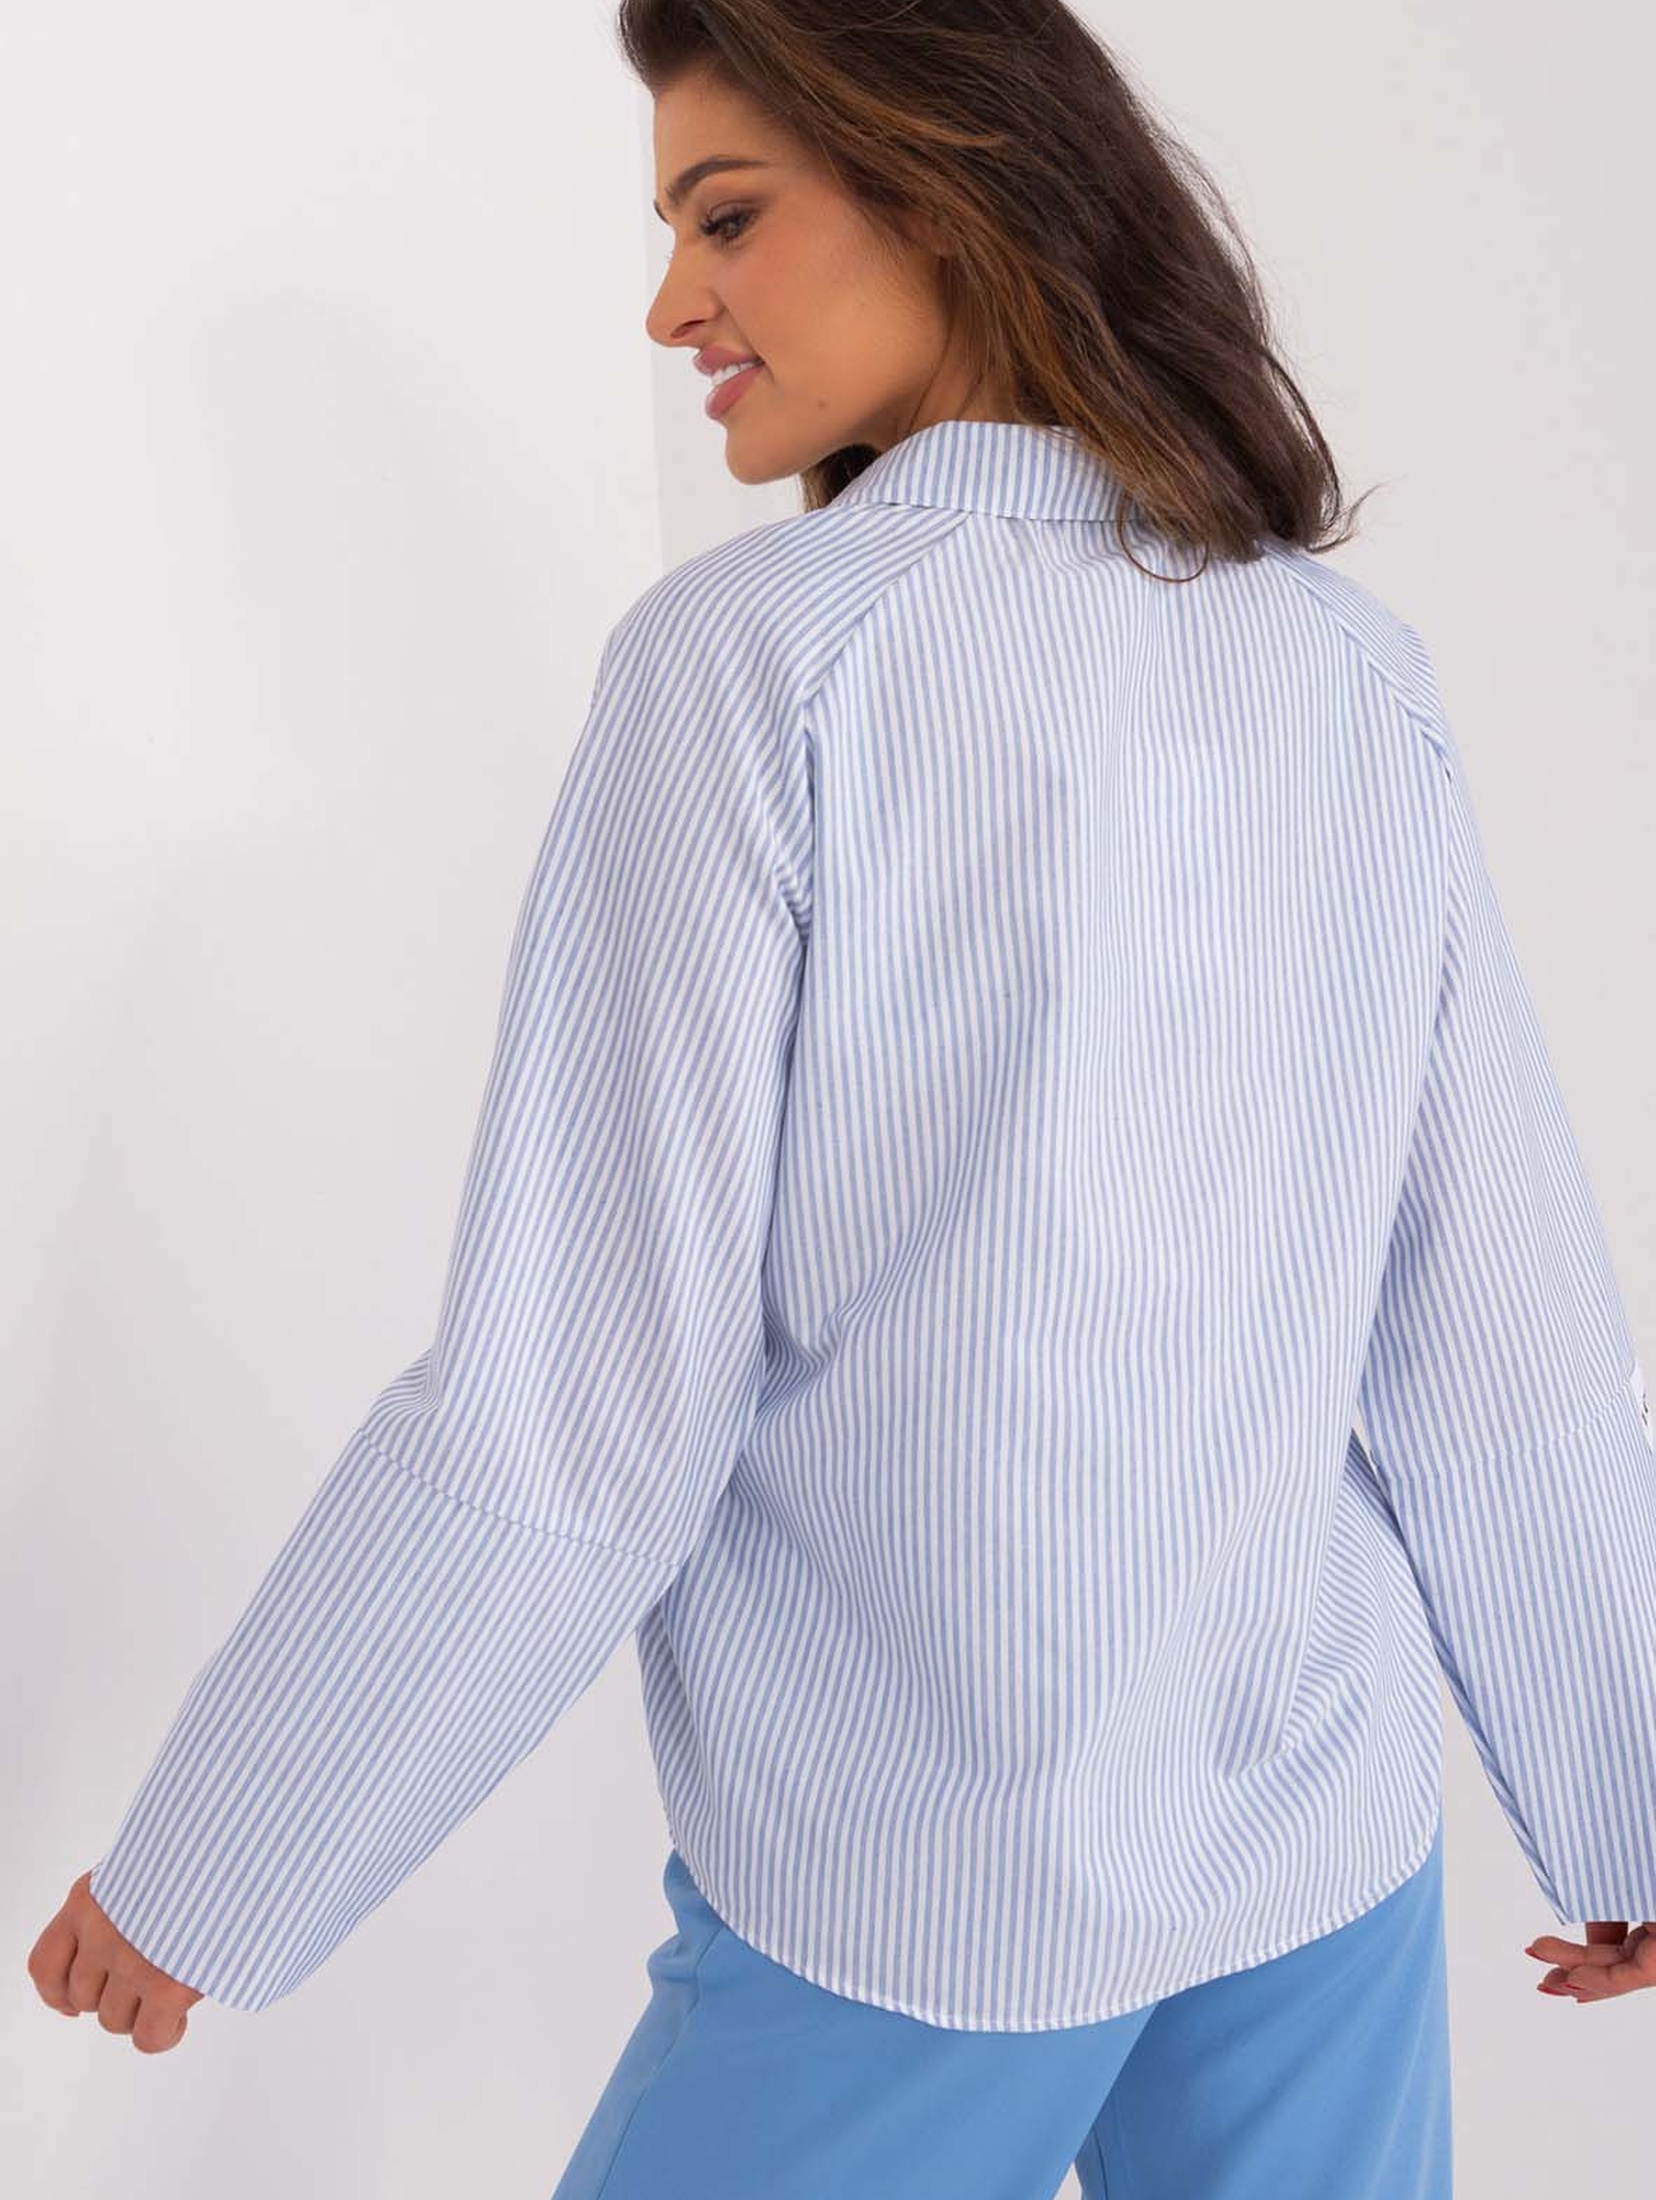 Jasnoniebiesko-biała casualowa koszula damska w paski